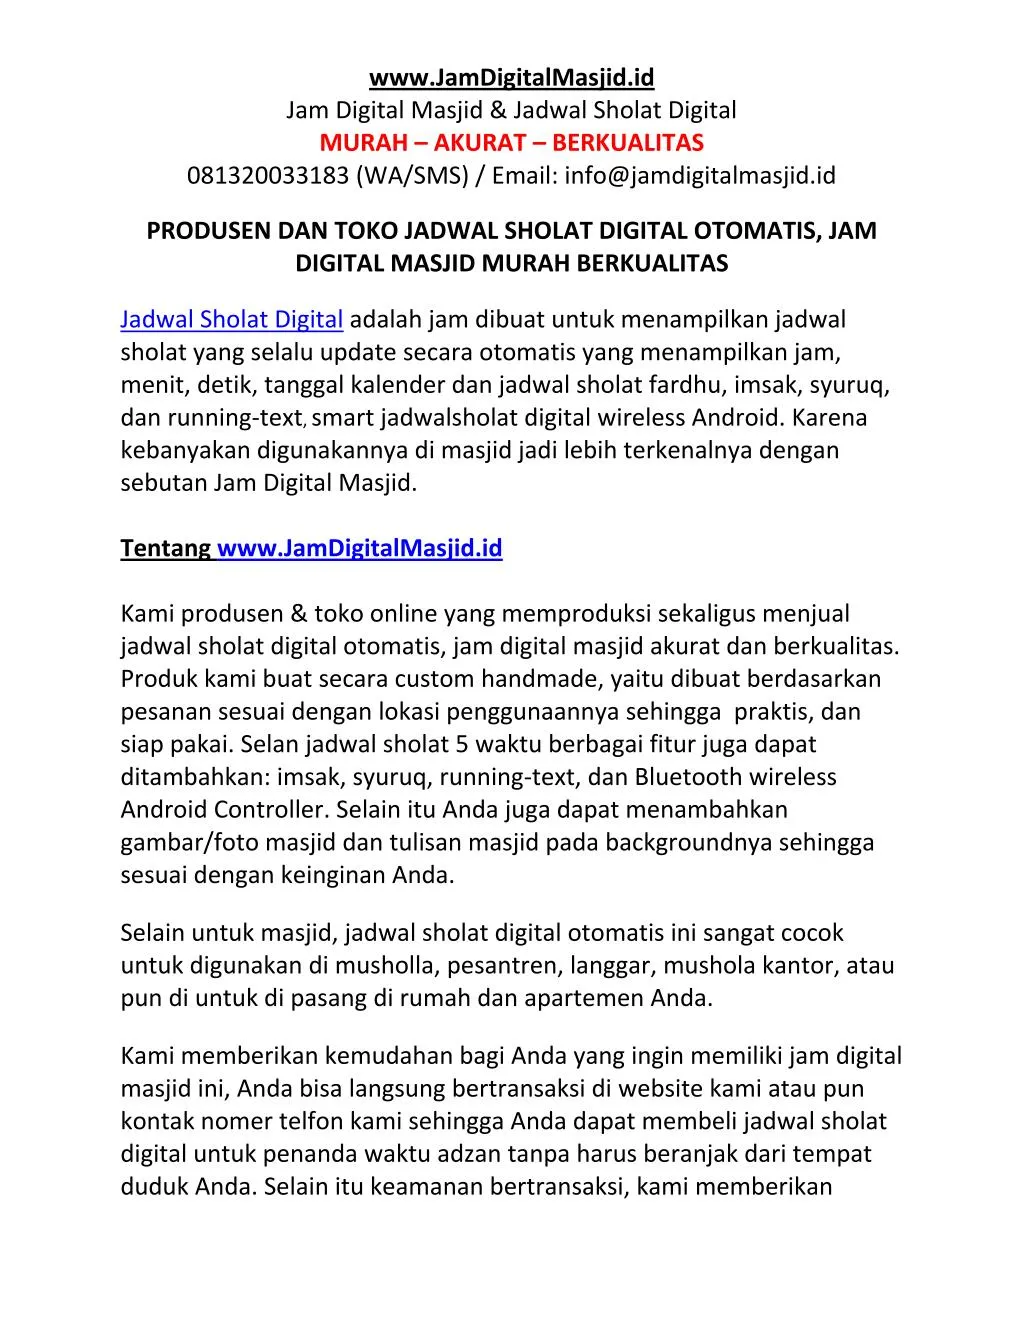 www jamdigitalmasjid id jam digital masjid jadwal